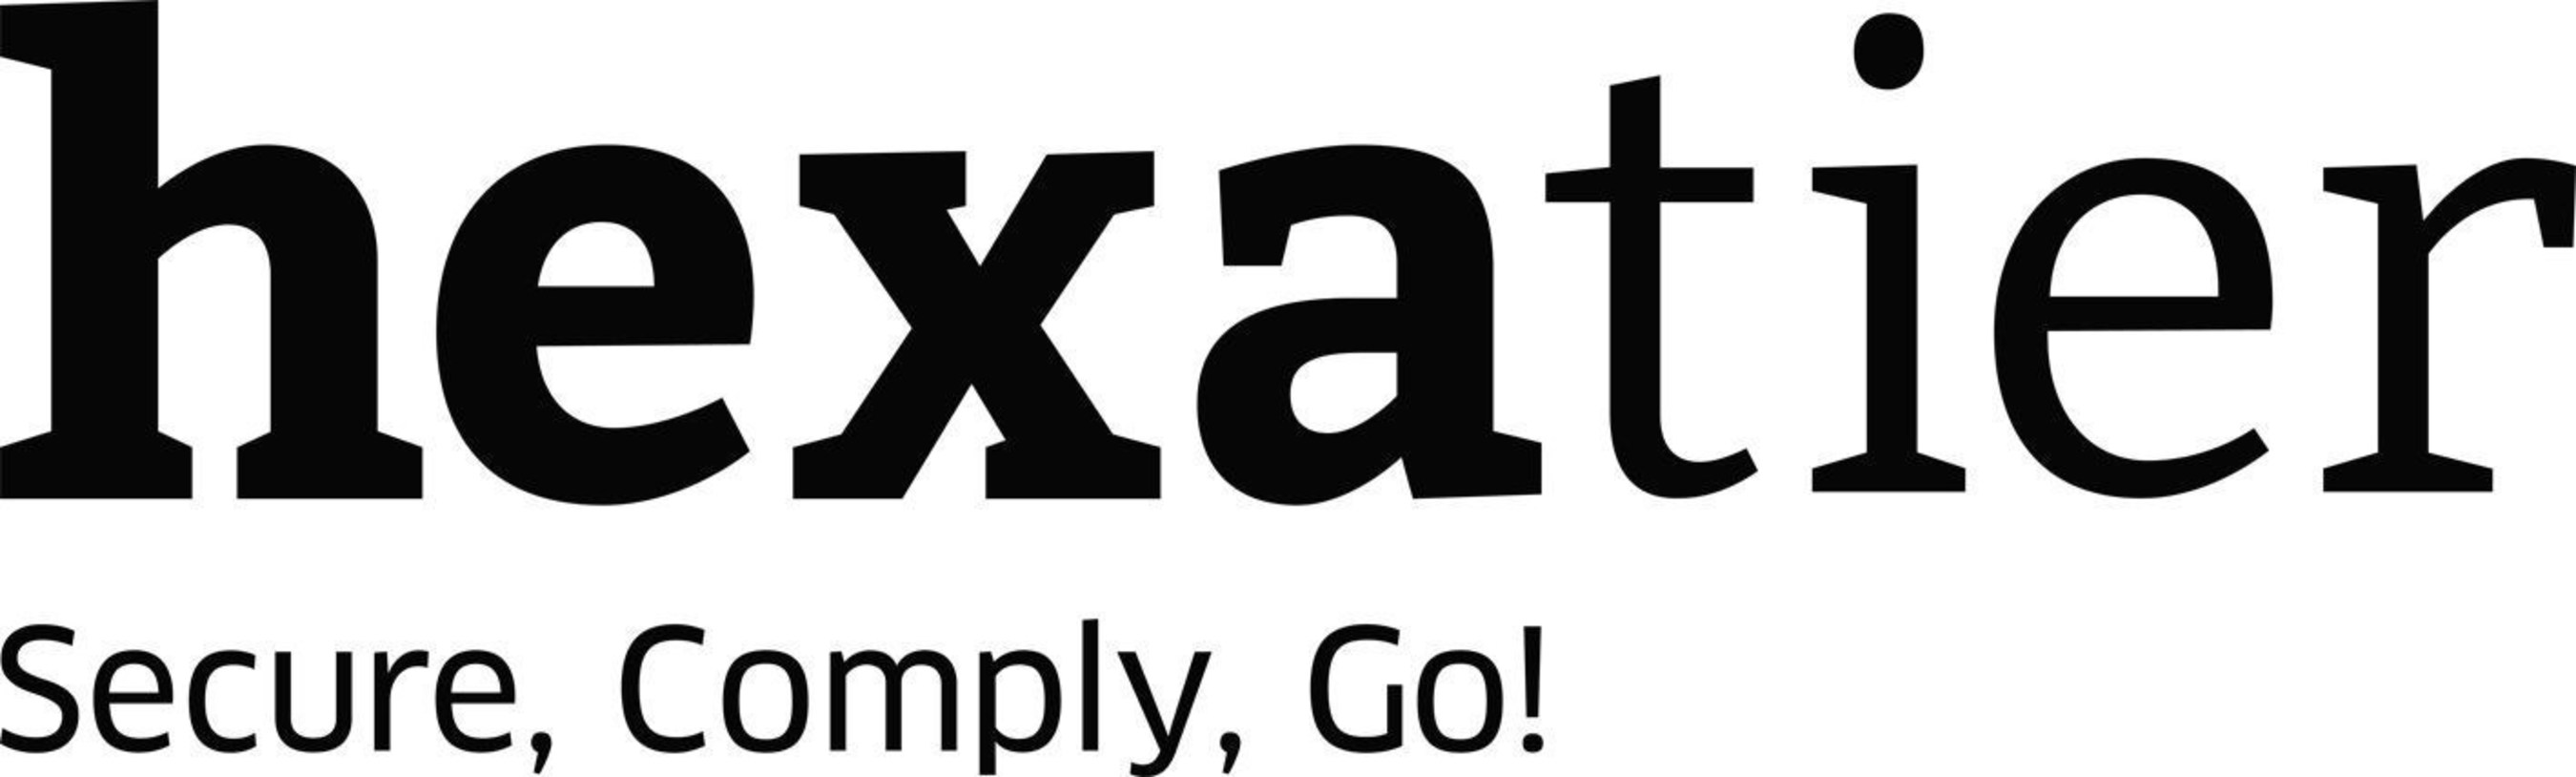 HexaTier logo